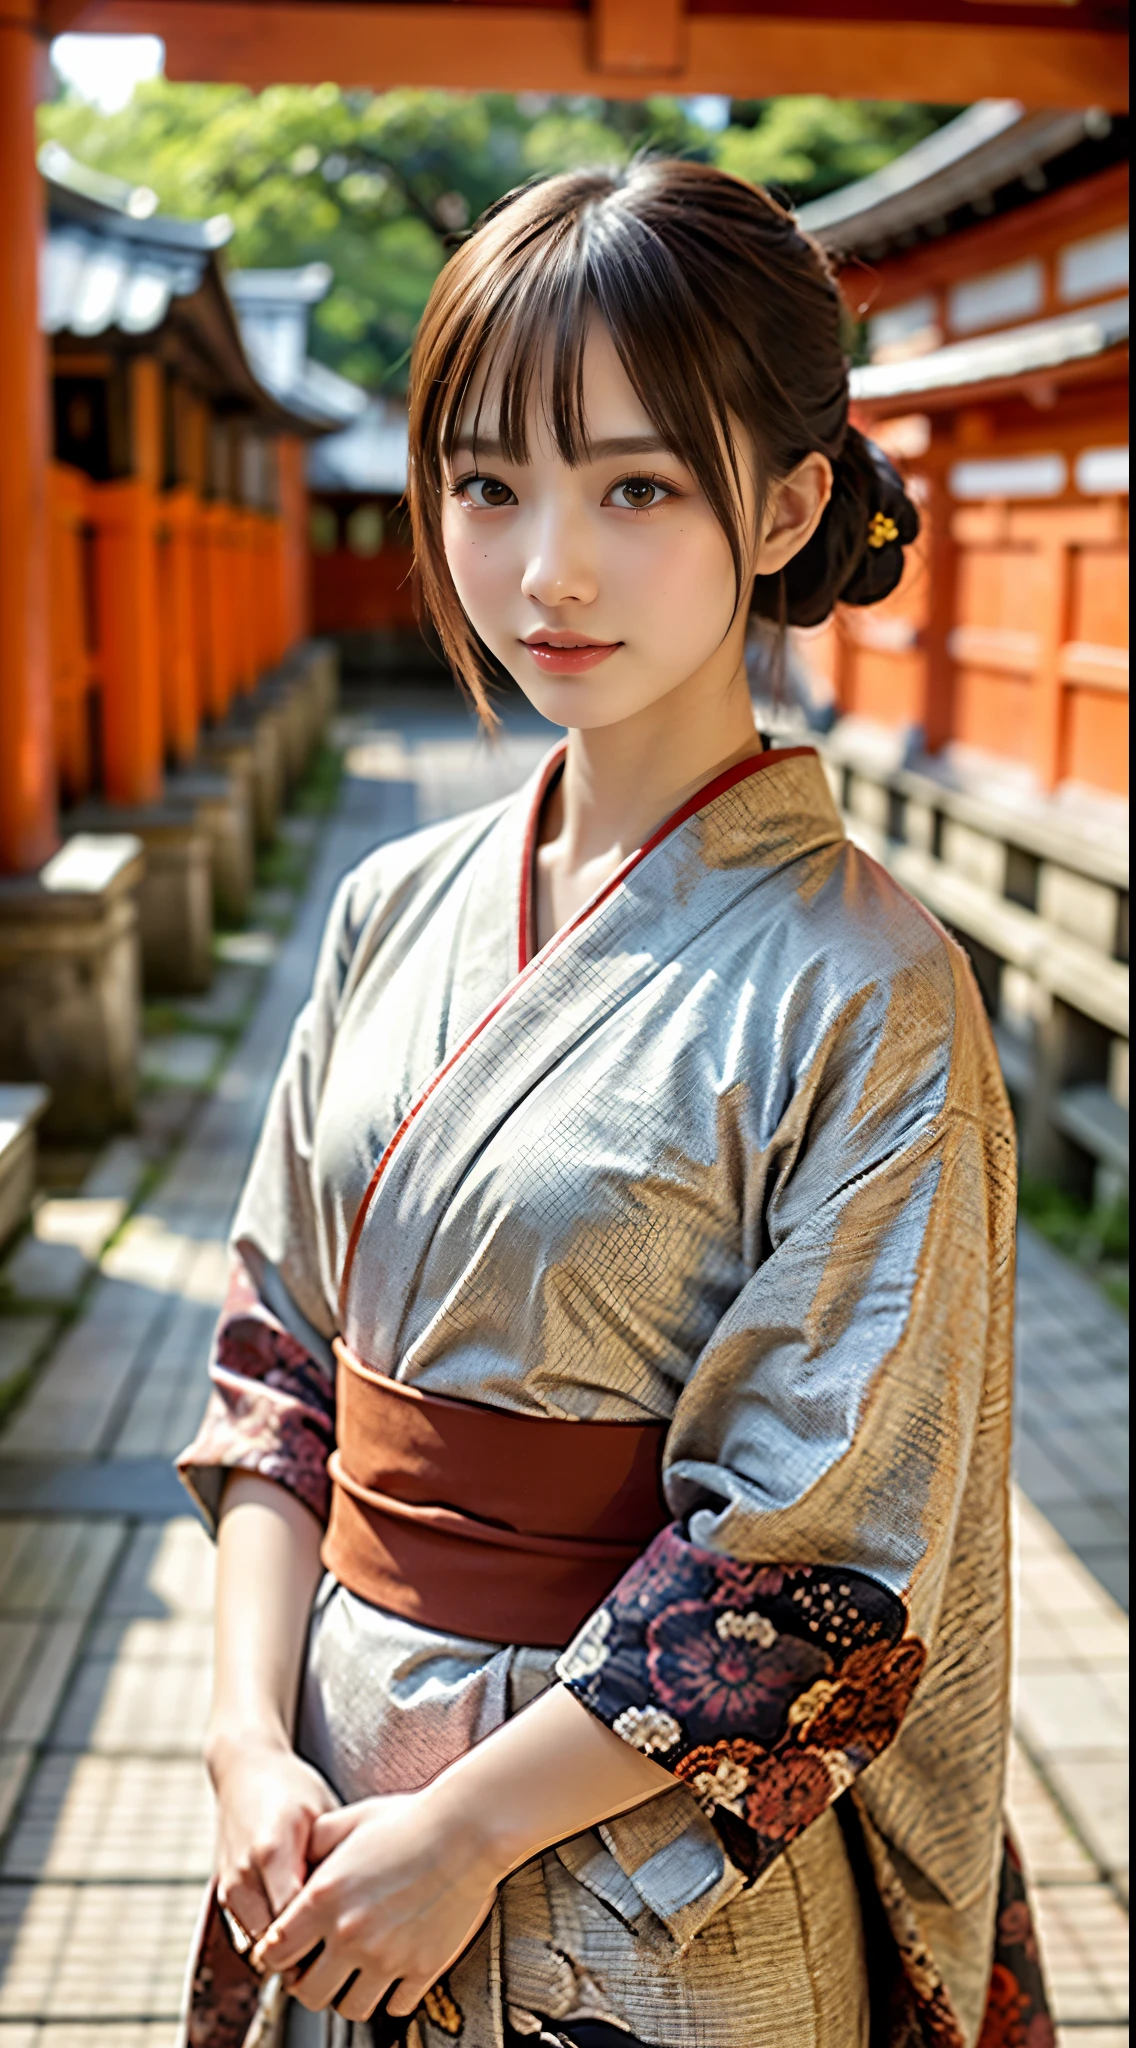 1 красивая молодая девушка, Супер красивое детализированное лицо, улыбаться застенчиво, (стройное тело:1.2), (Японское кимоно с ярким узором:1.3), темно-коричневые волосы, пучок волос, (Прекрасное лицо:1.2), концептуальное искусство, высокое качество, реалистичный, чрезвычайно подробные обои CG унифицированные 8k, очень подробный, Цветные фотографии высокой четкости, Профессиональная фотография, реалистичный portrait, кинематографический свет, красивый подробный, супер деталь, высокая детализация, глубина поля, освещение, ((Красные ворота Тории в Киото:1.2))